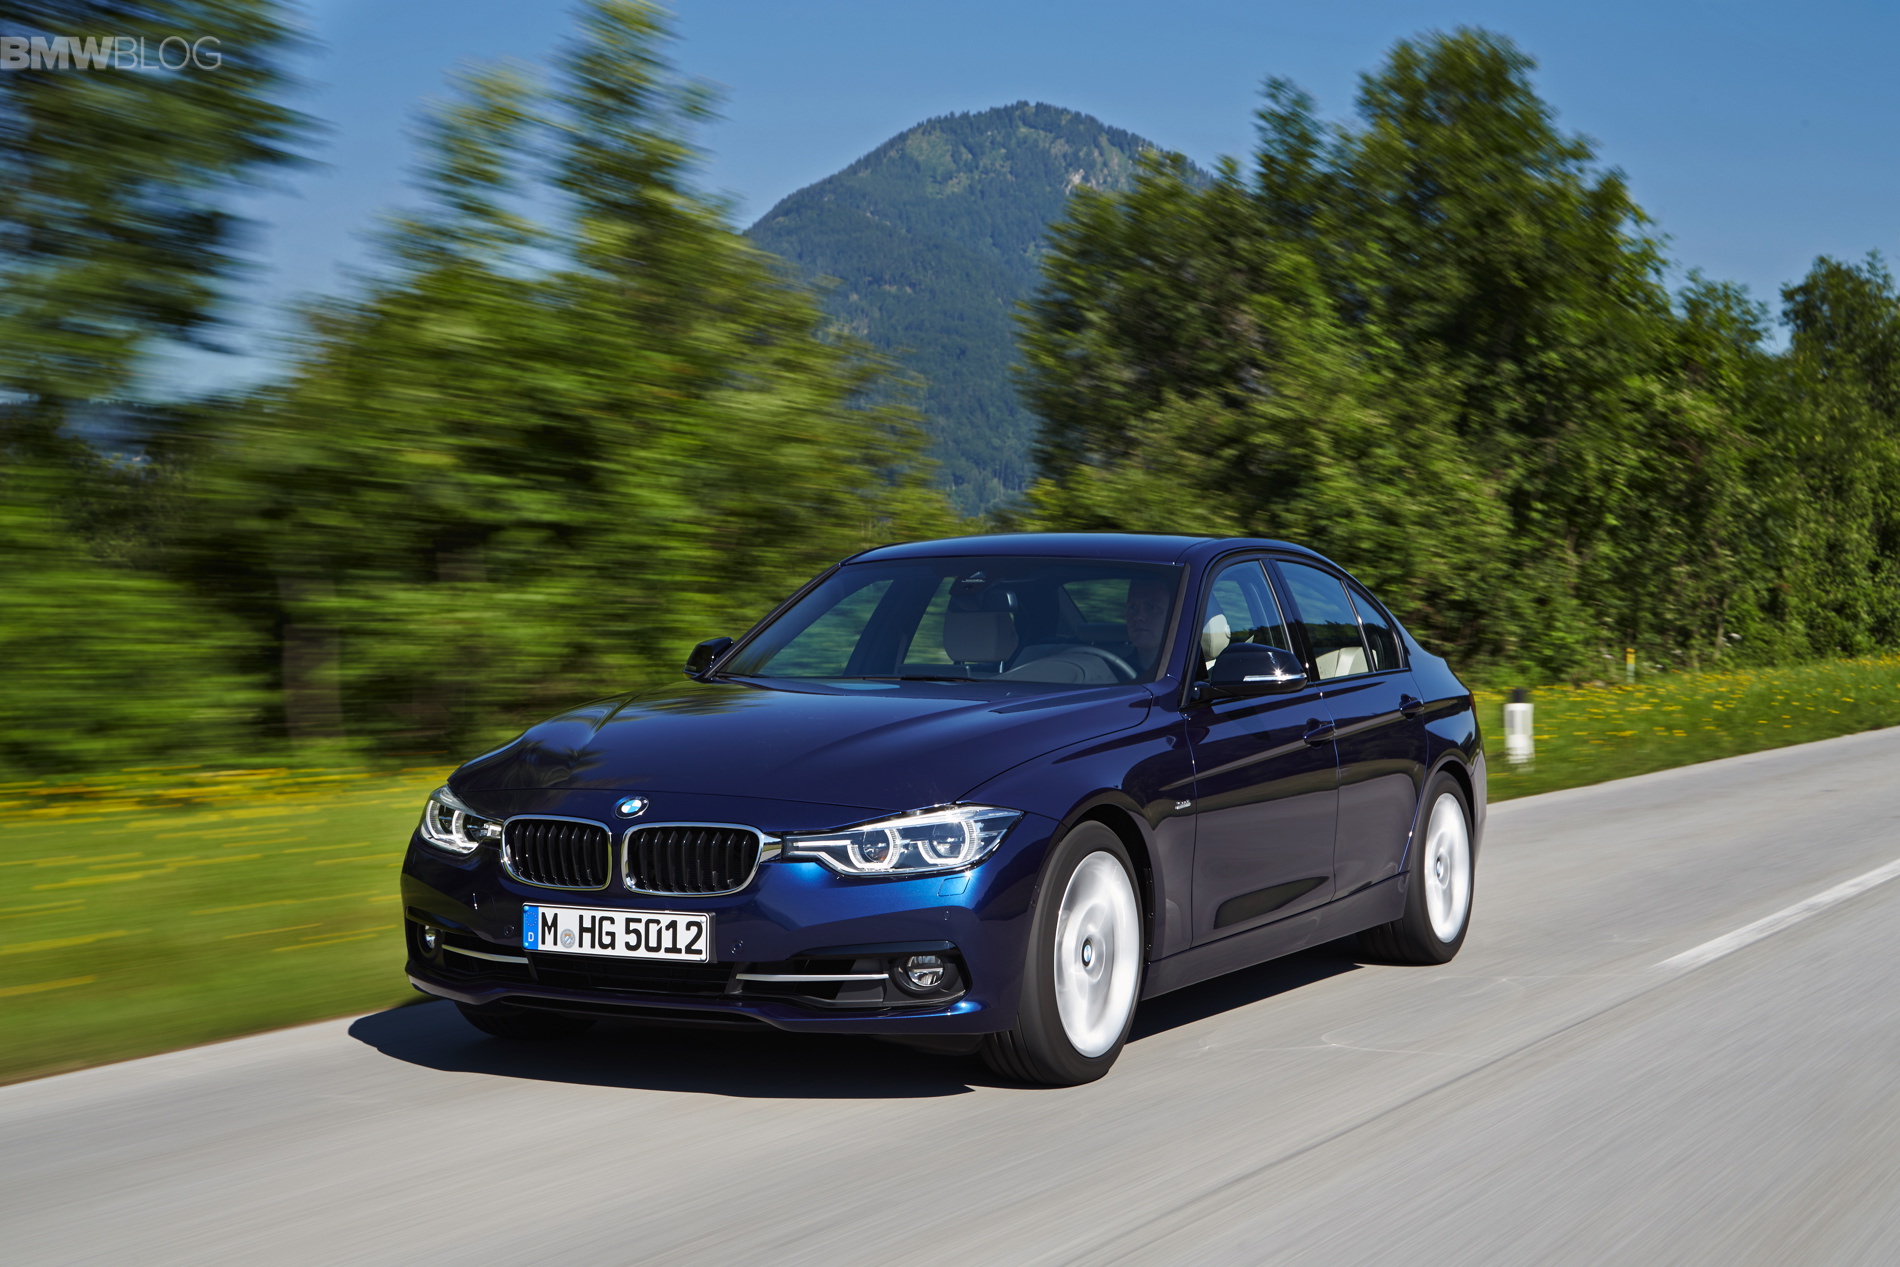 2015 BMW 340i - Driving Impressions